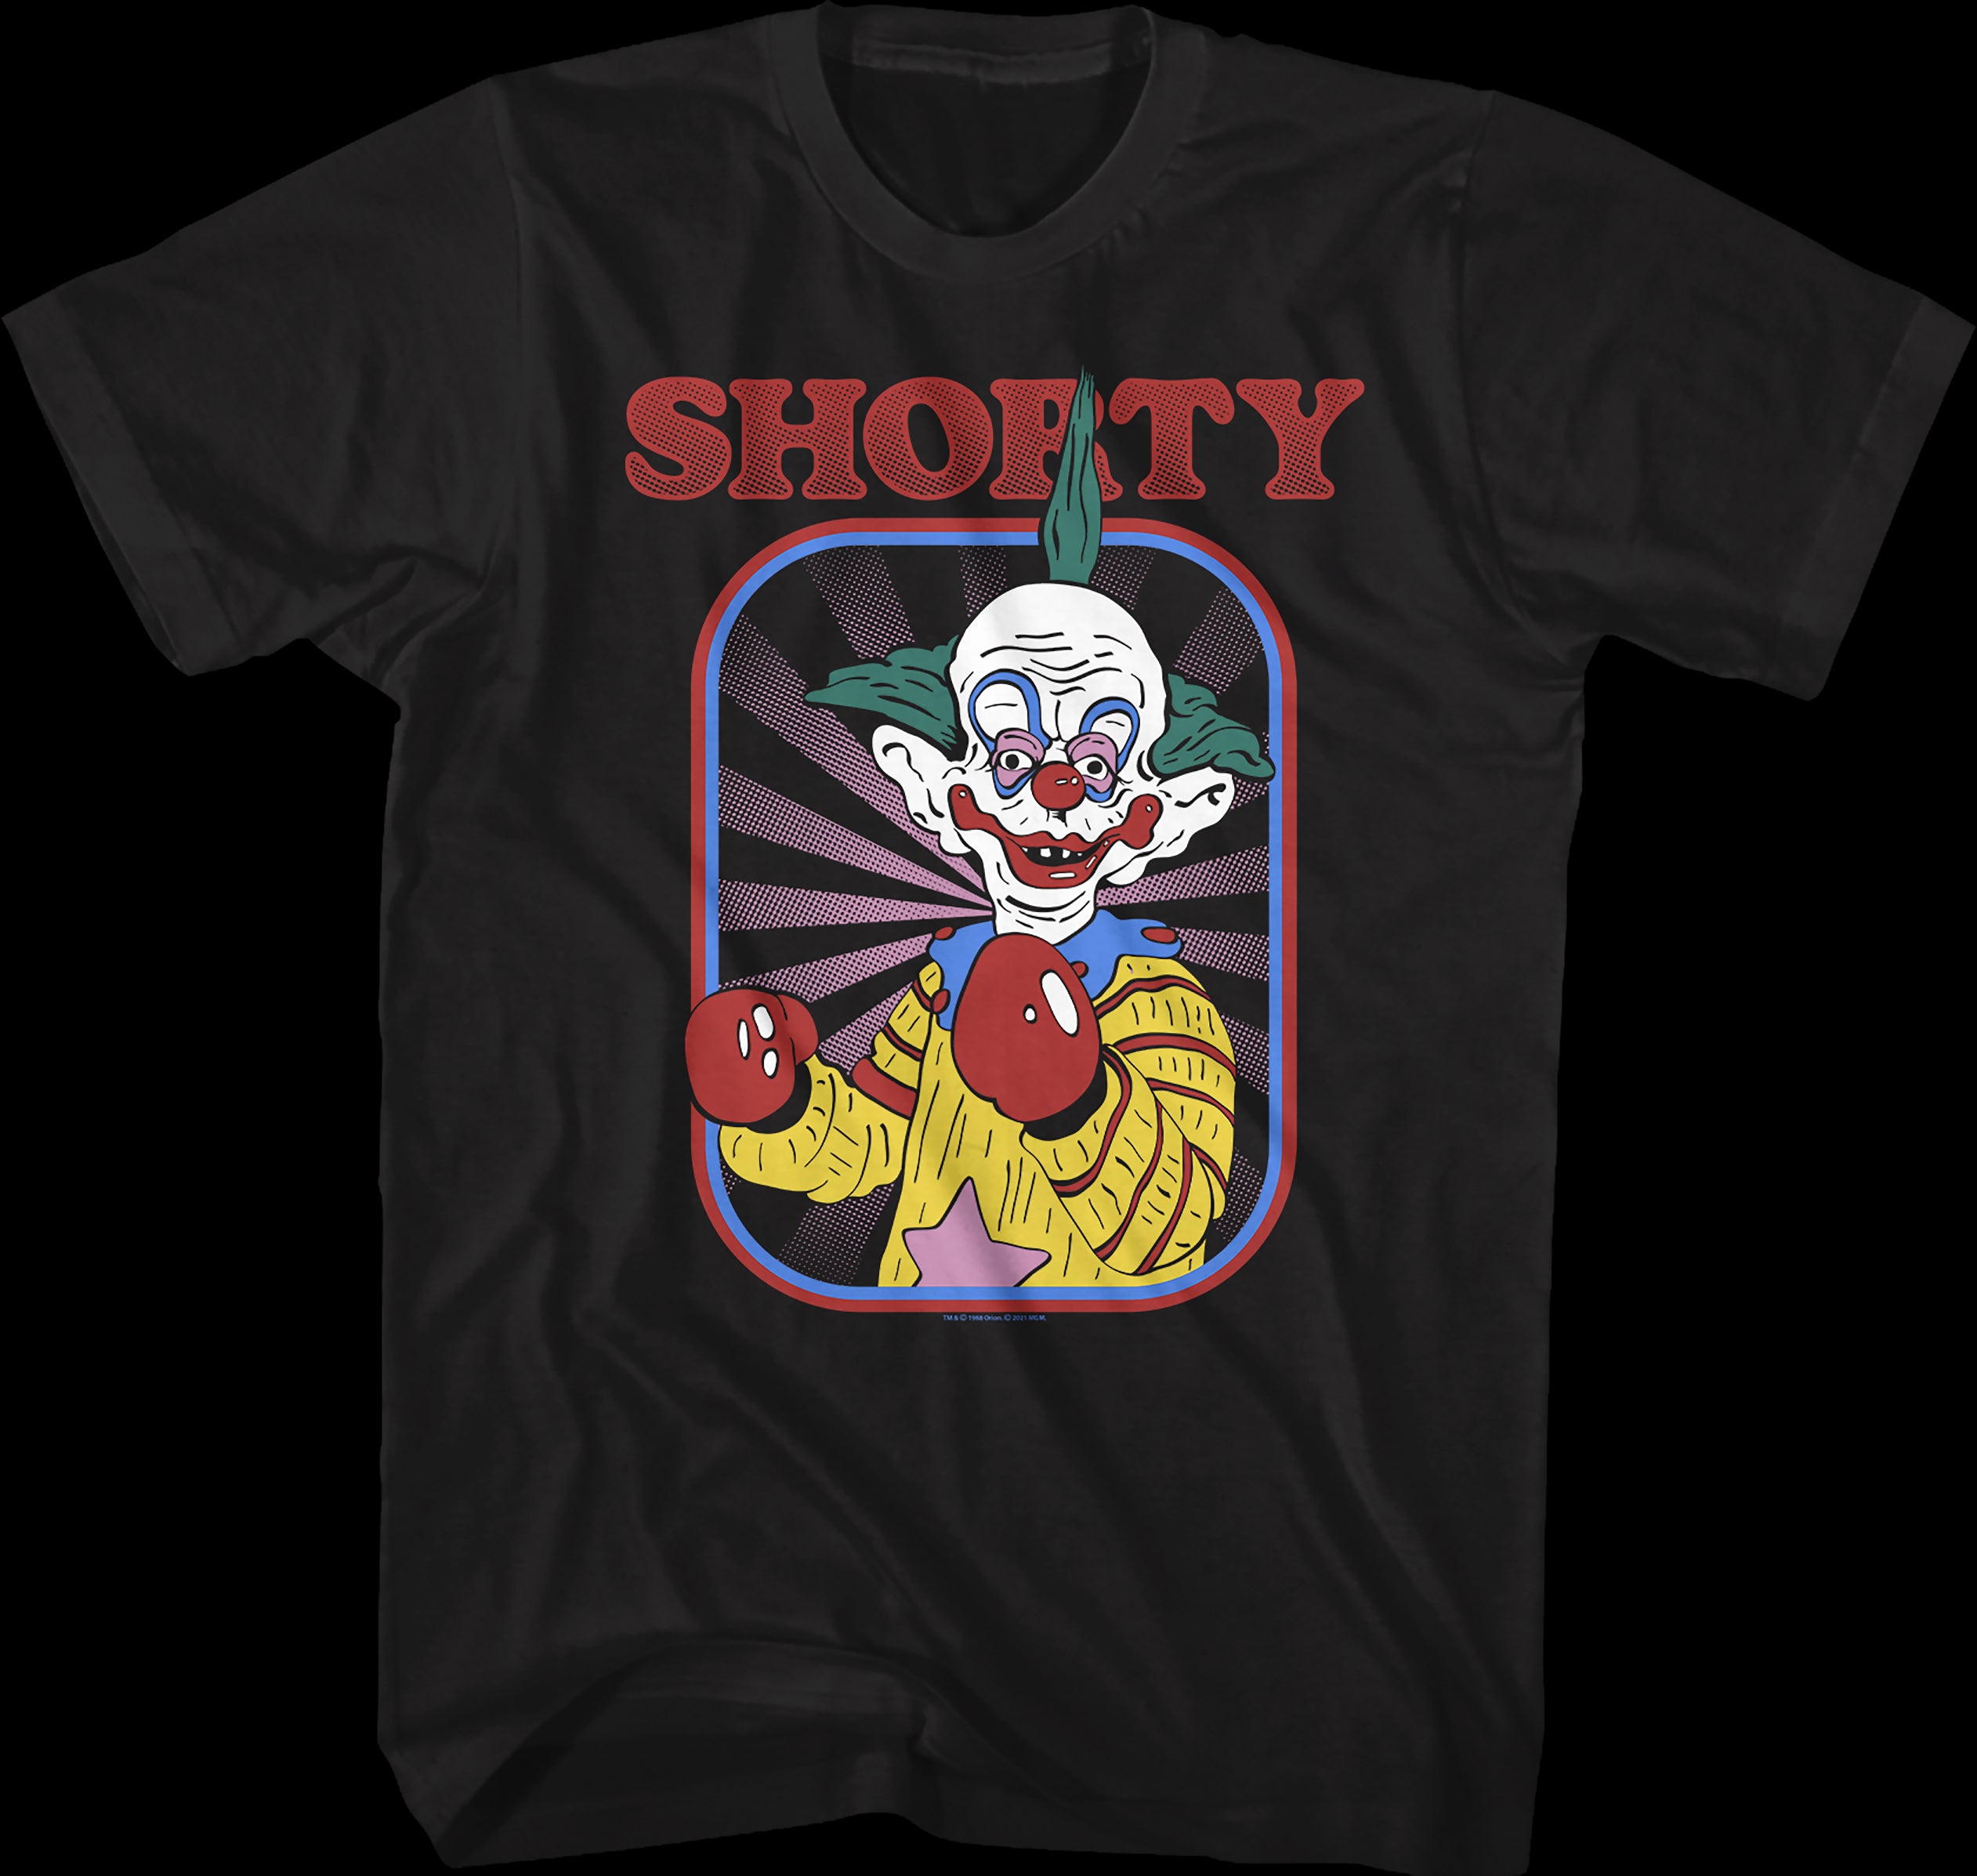 shawty like a melody | Kids T-Shirt